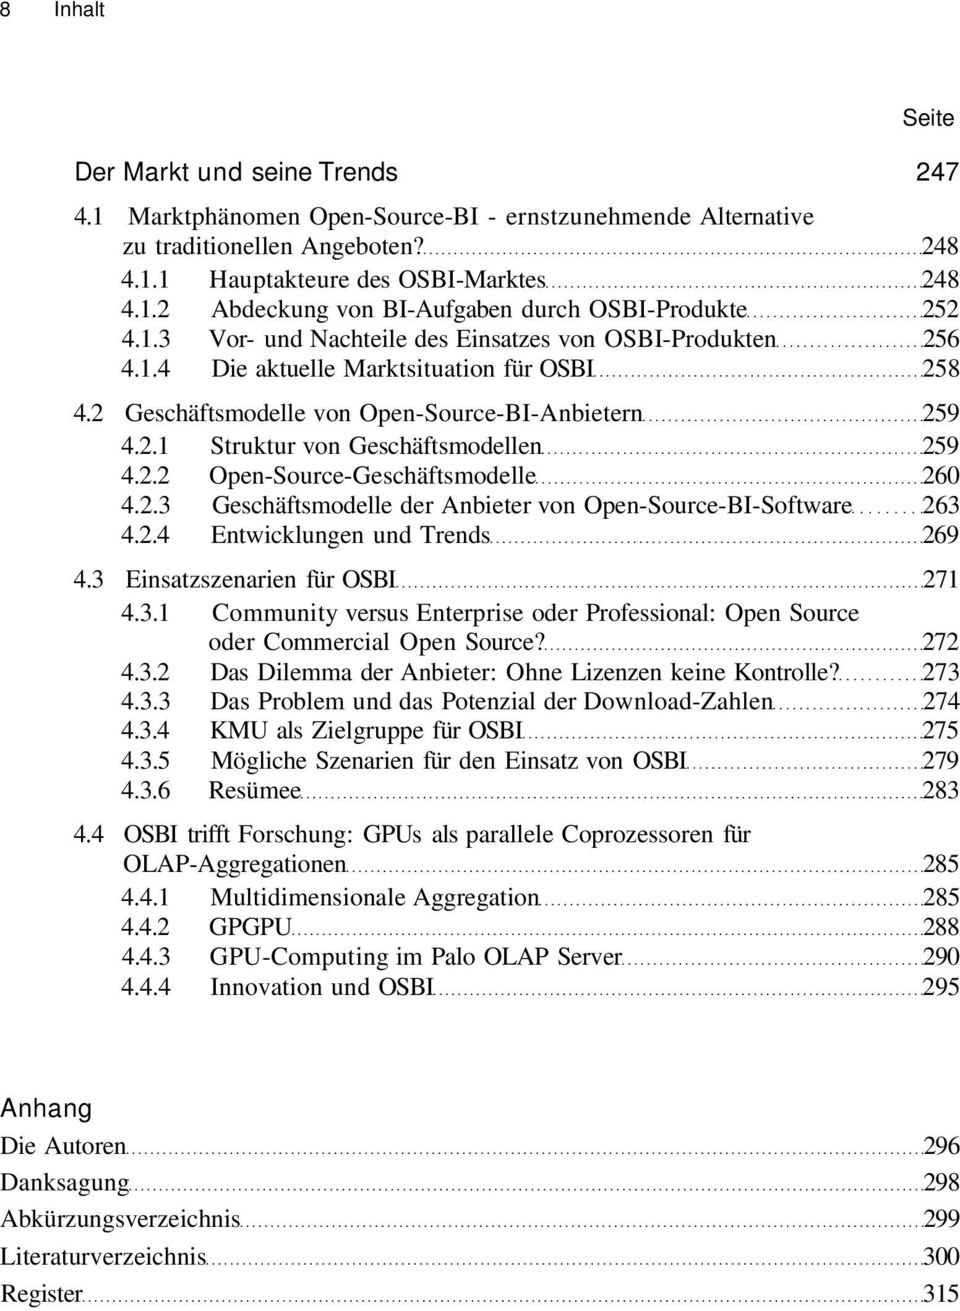 2.2 Open-Source-Geschäftsmodelle 260 4.2.3 Geschäftsmodelle der Anbieter von Open-Source-BI-Software 263 4.2.4 Entwicklungen und Trends 269 4.3 Einsatzszenarien für OSBI 271 4.3.1 Community versus Enterprise oder Professional: Open Source oder Commercial Open Source?